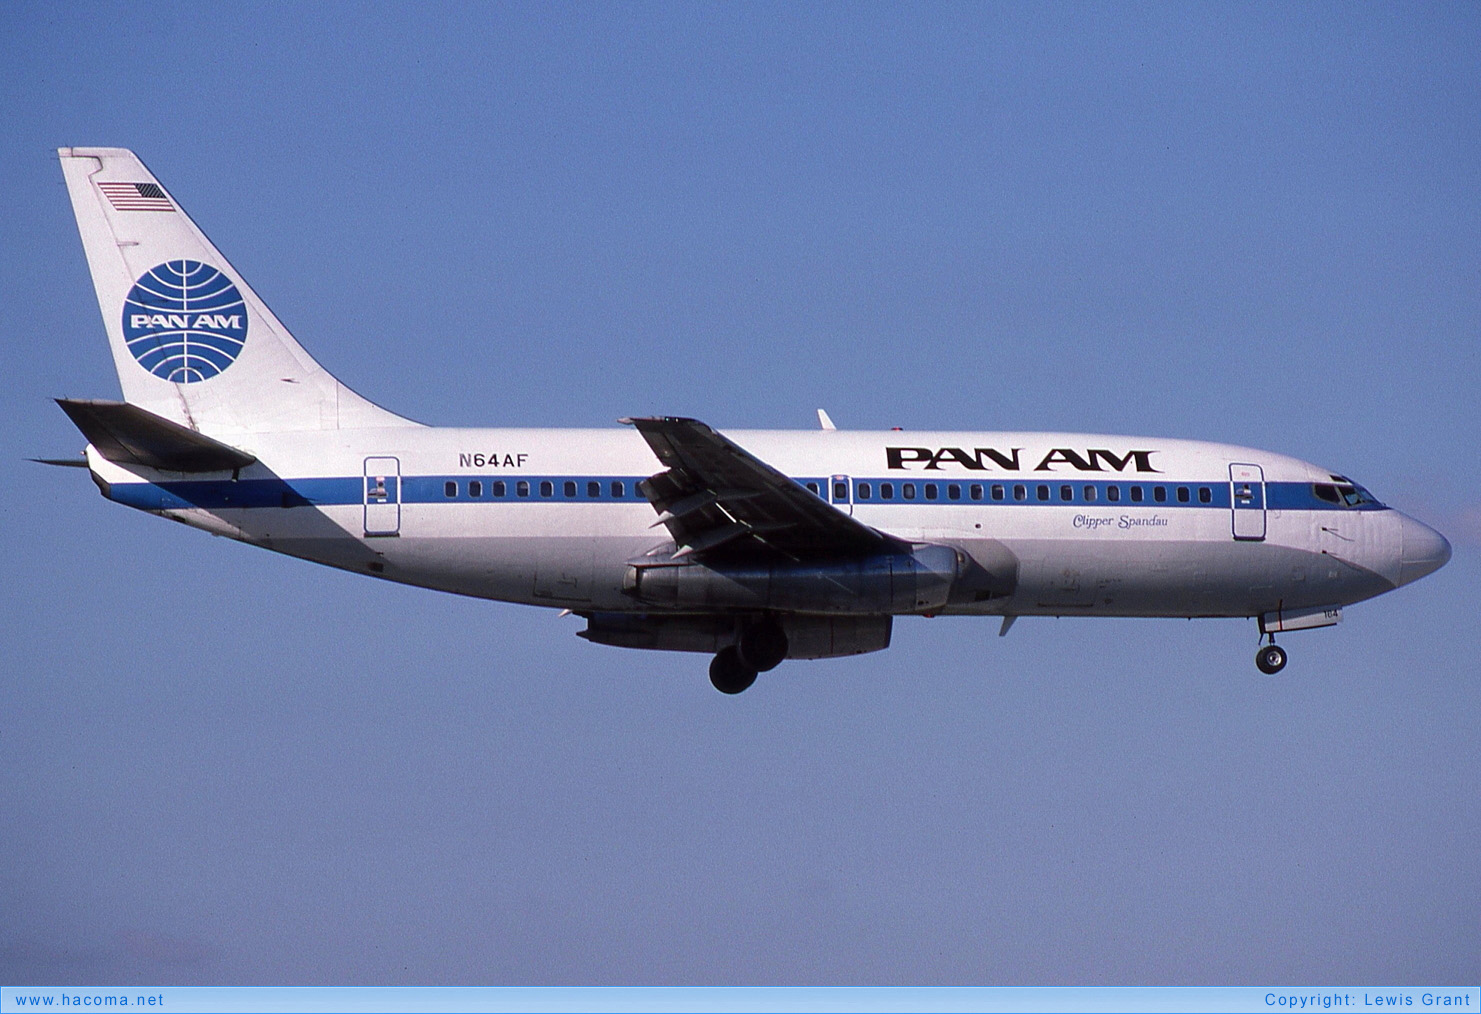 Foto von N64AF - Pan Am Clipper Spandau / San Diego / Morning Glory - Miami International Airport - 21.11.1987